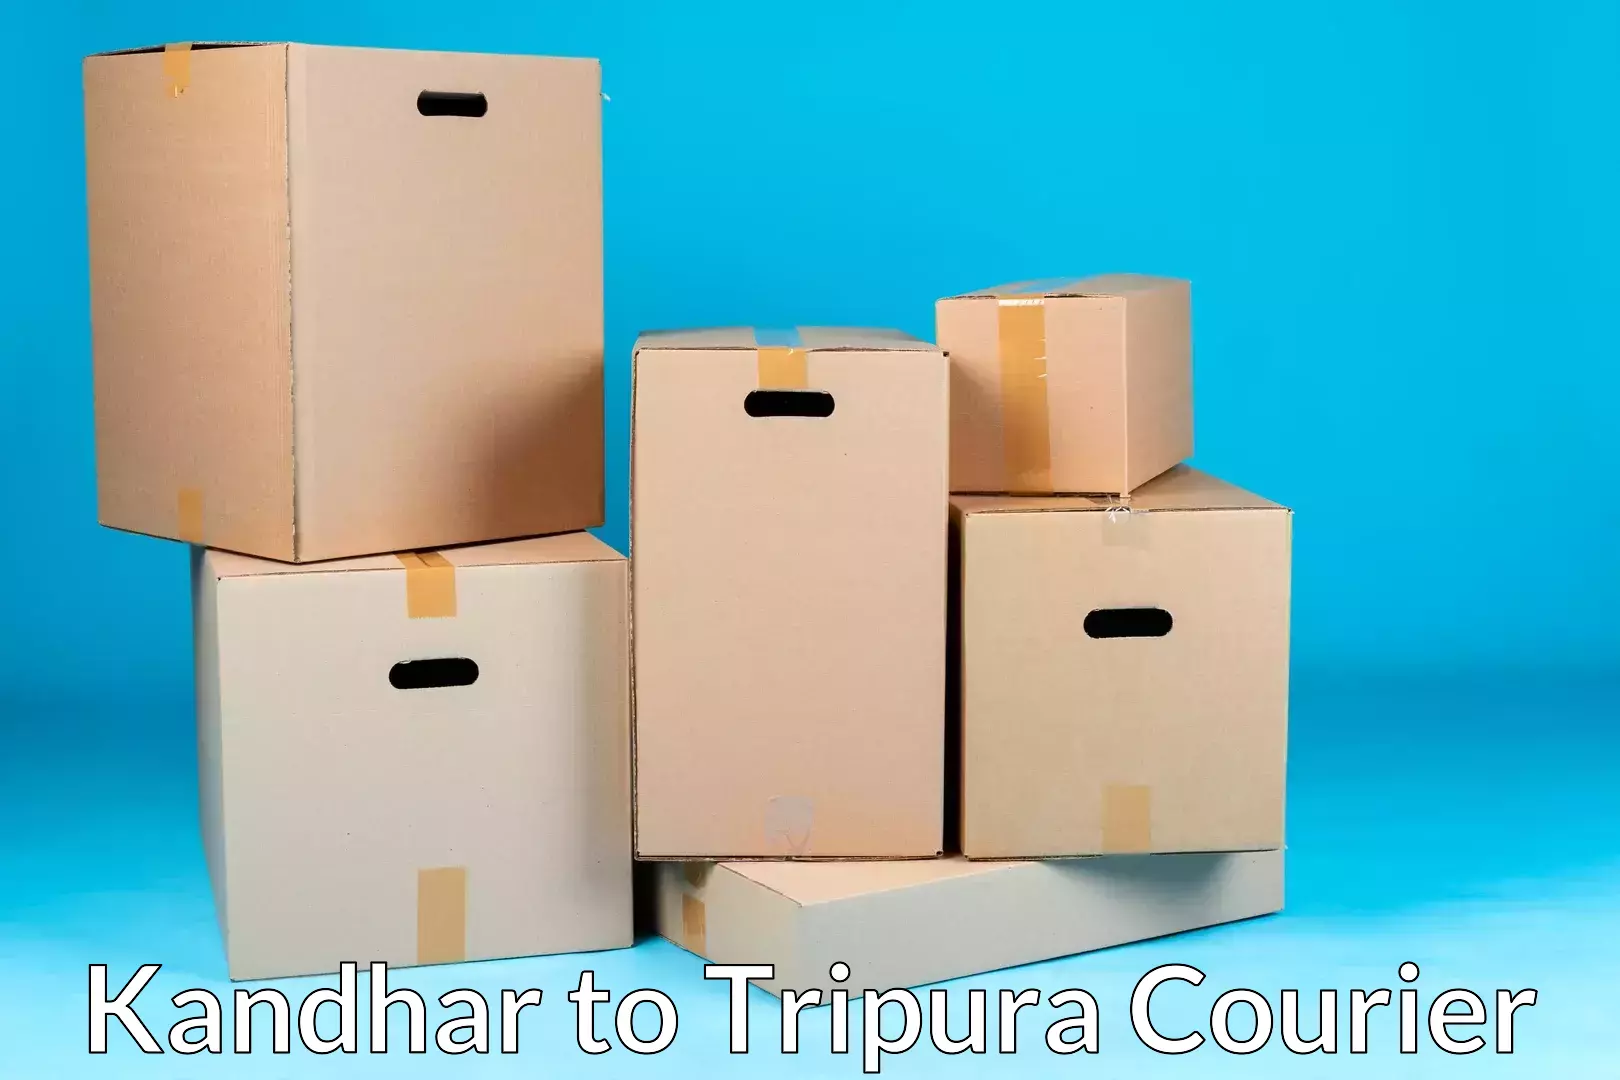 Furniture transport professionals Kandhar to Kailashahar